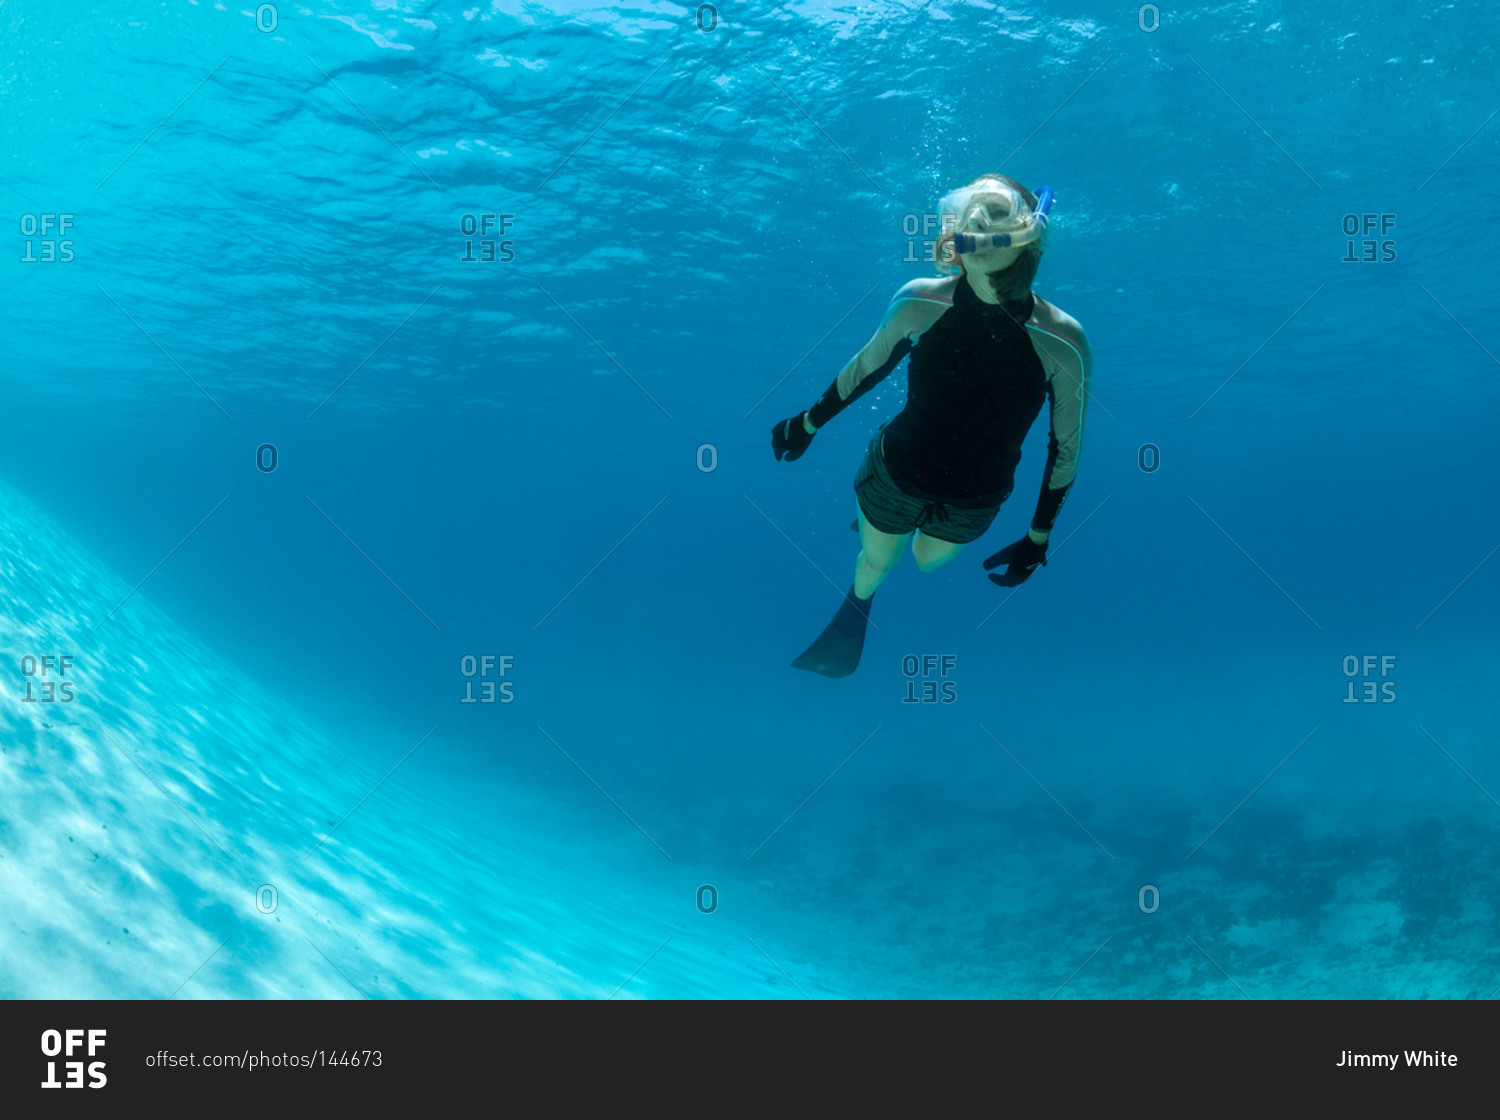 Woman snorkeling near ocean drop off